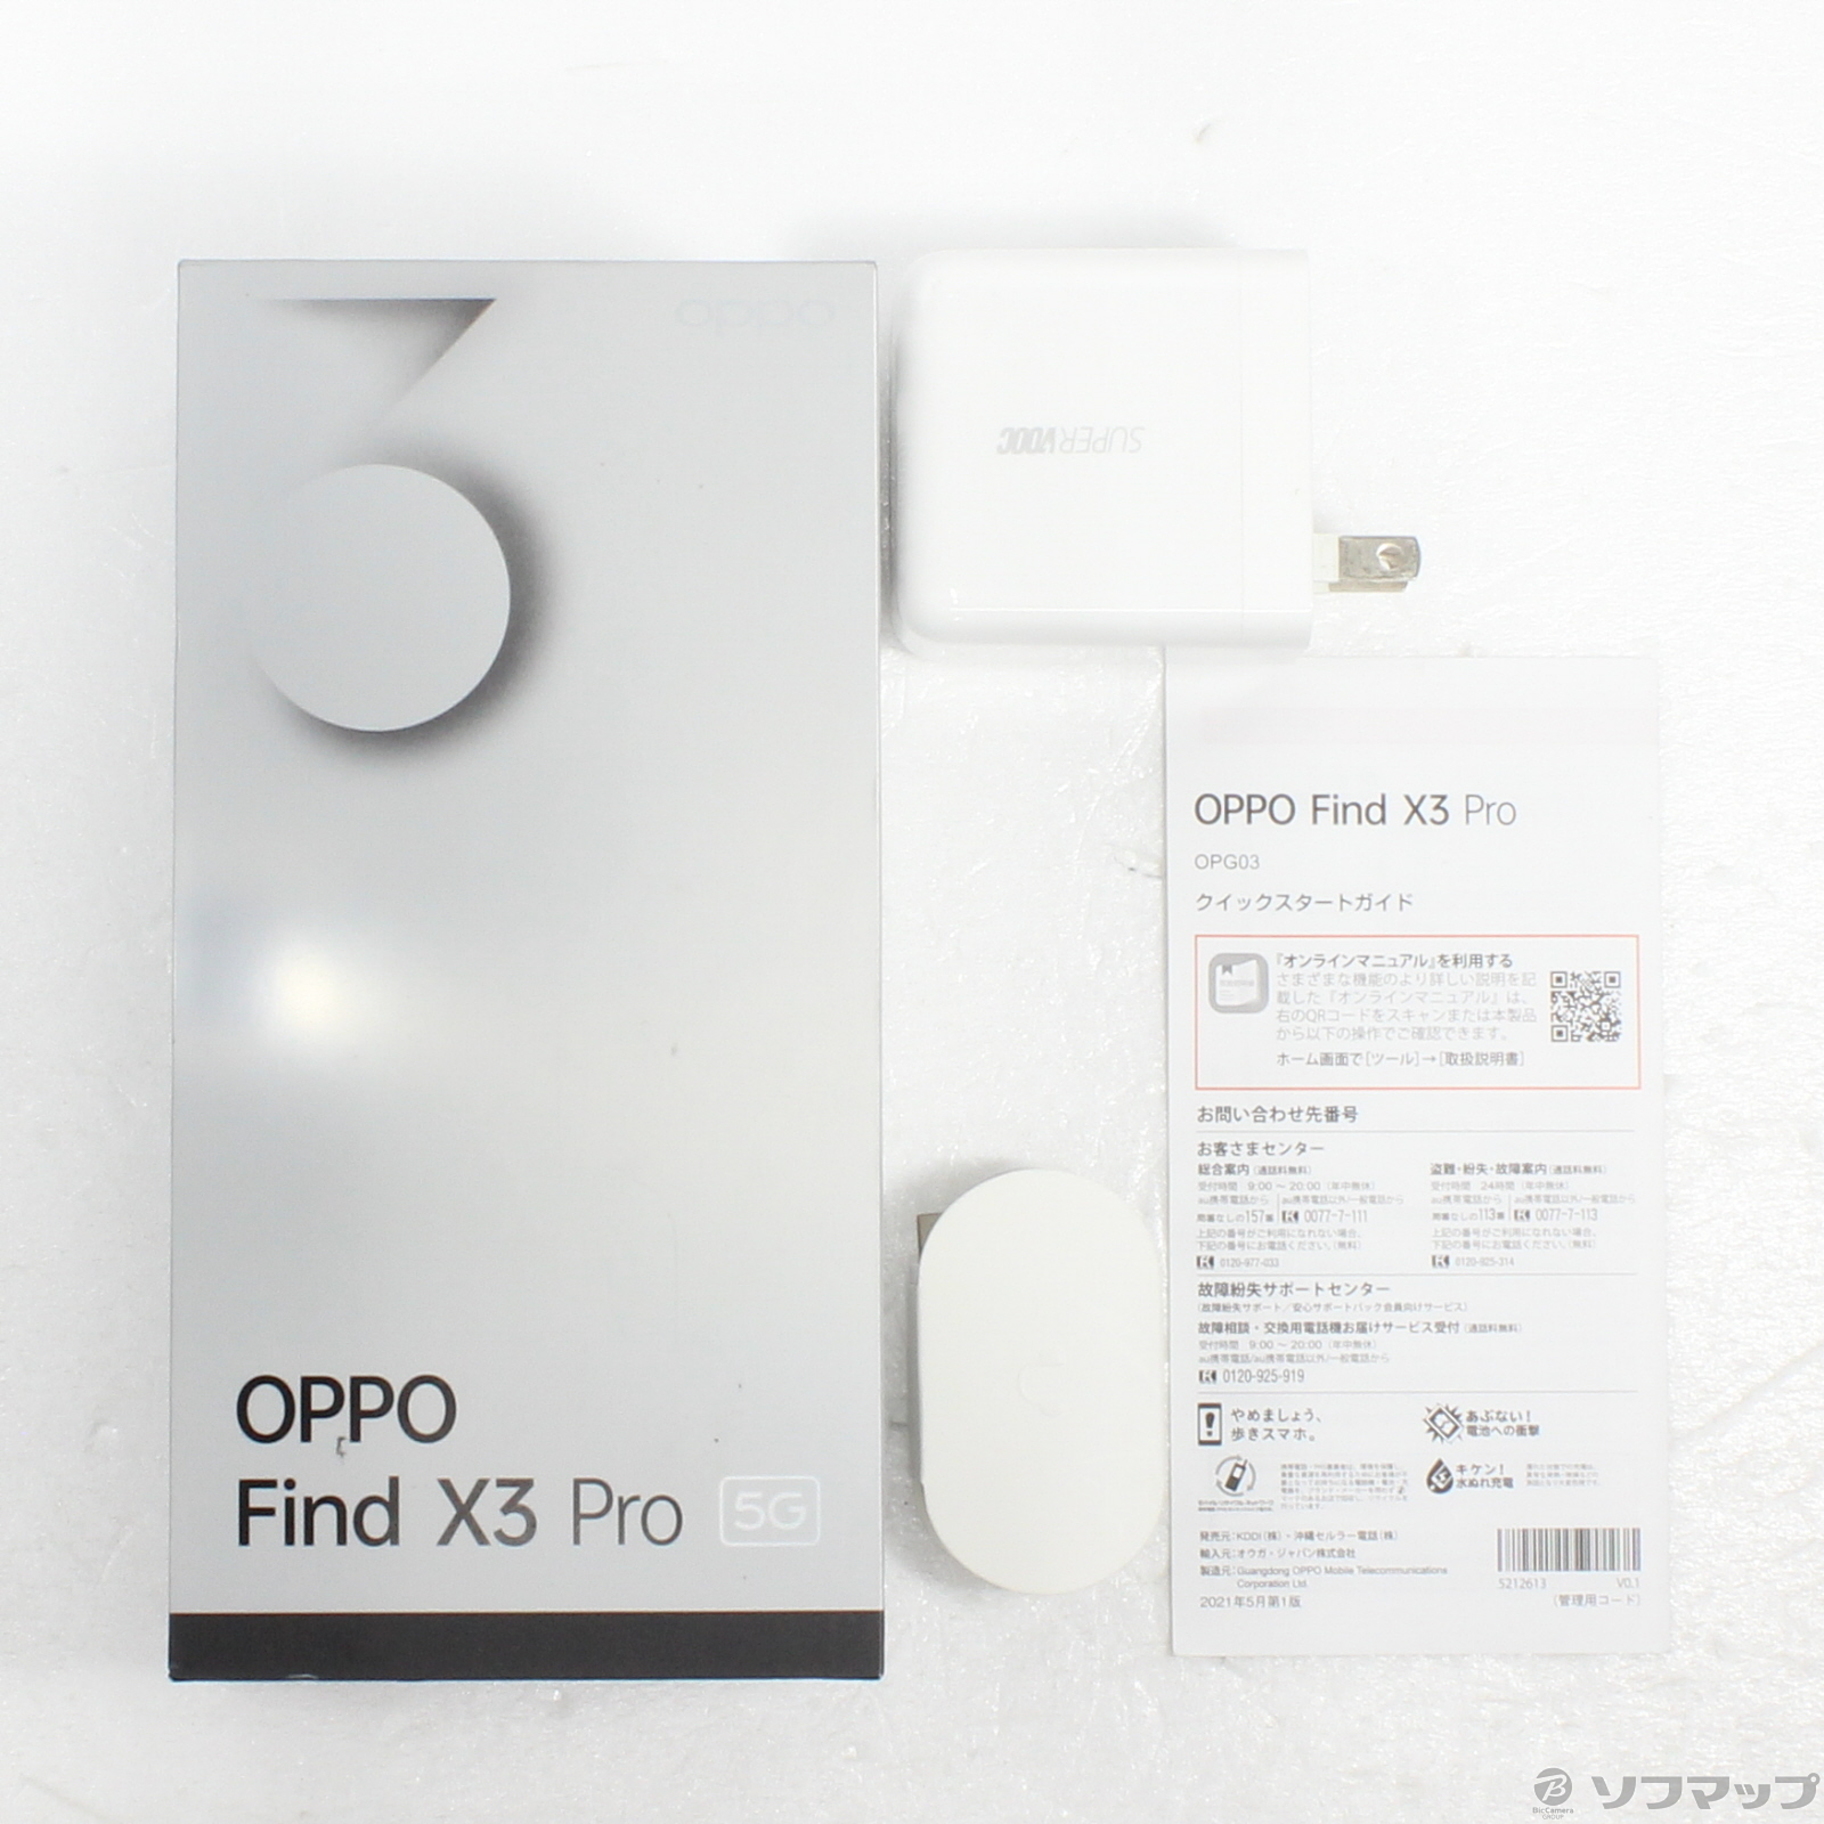 OPPO Find X3 Pro OPG03 グロスブラック au版